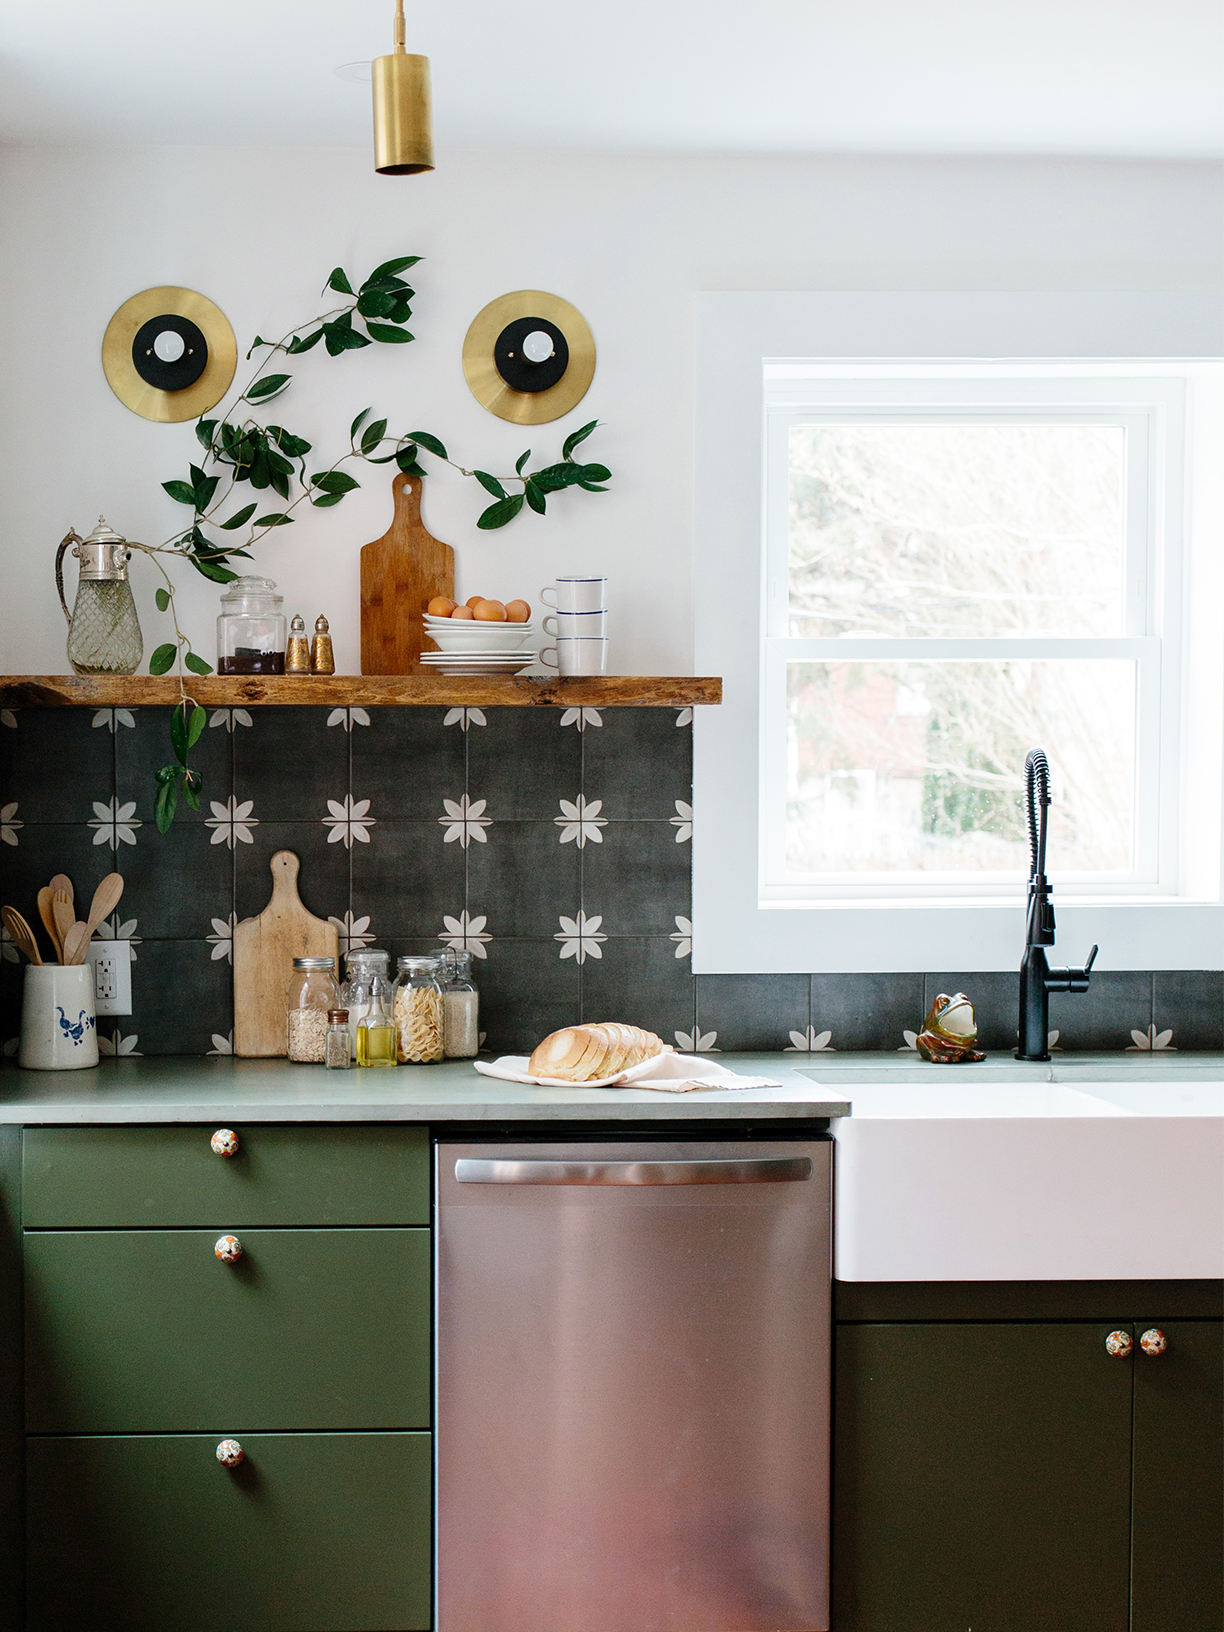 Nếu bạn đang tìm kiếm một bức tranh treo tường độc đáo cho phòng bếp của mình, hãy xem xét lựa chọn hình nền treo tường màu xanh lá cây. Một mẫu giấy dán tường màu xanh lá cây sẽ tạo ra một không gian đầy tươi mới và khiến cho bất kỳ ai đến thăm nhà bạn đều sẽ ghen tị với không gian nấu nướng của bạn.